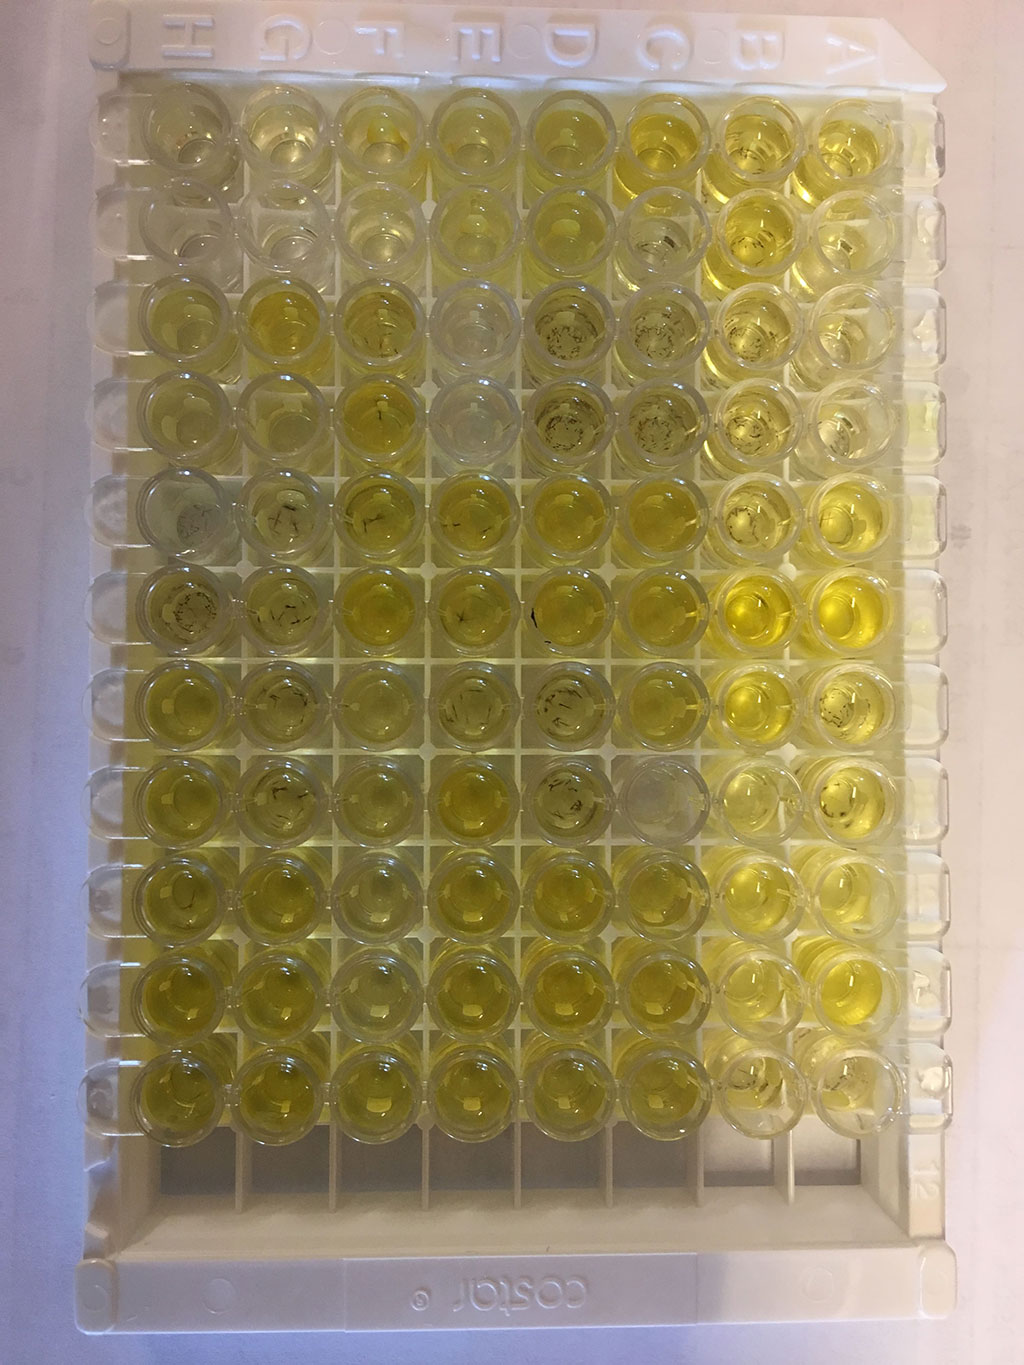 Imagen: Kit Duo Set ELISA para la determinación de Lipocalina asociada a gelatinasa de neutrófilos (NGAL) (Fotografía cortesía de R&D Systems)